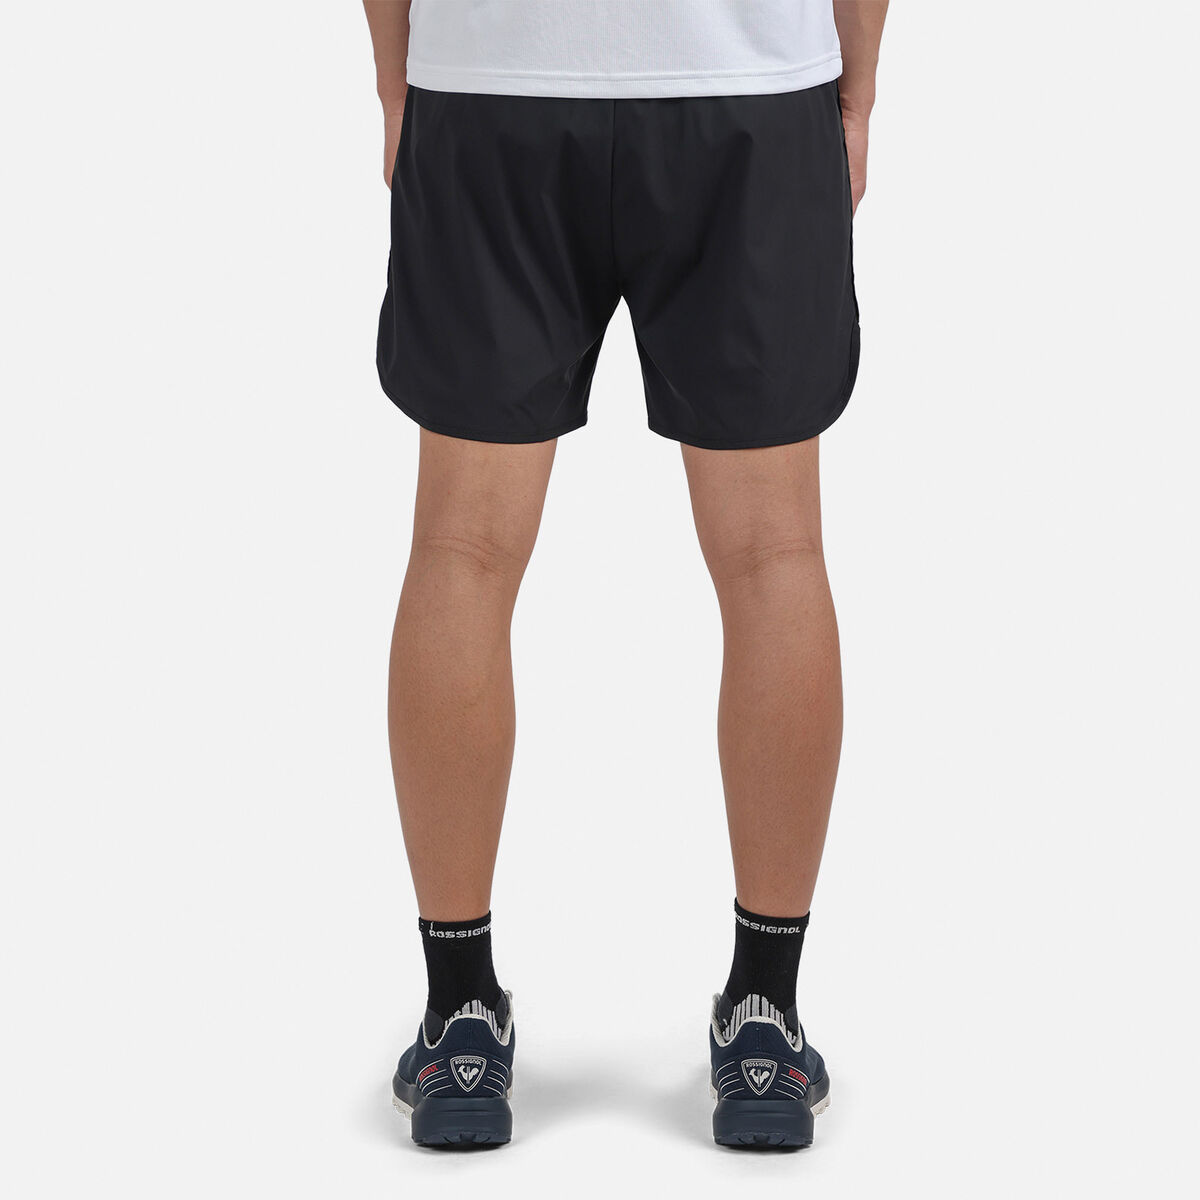 Men's 2-in-1 Active Shorts